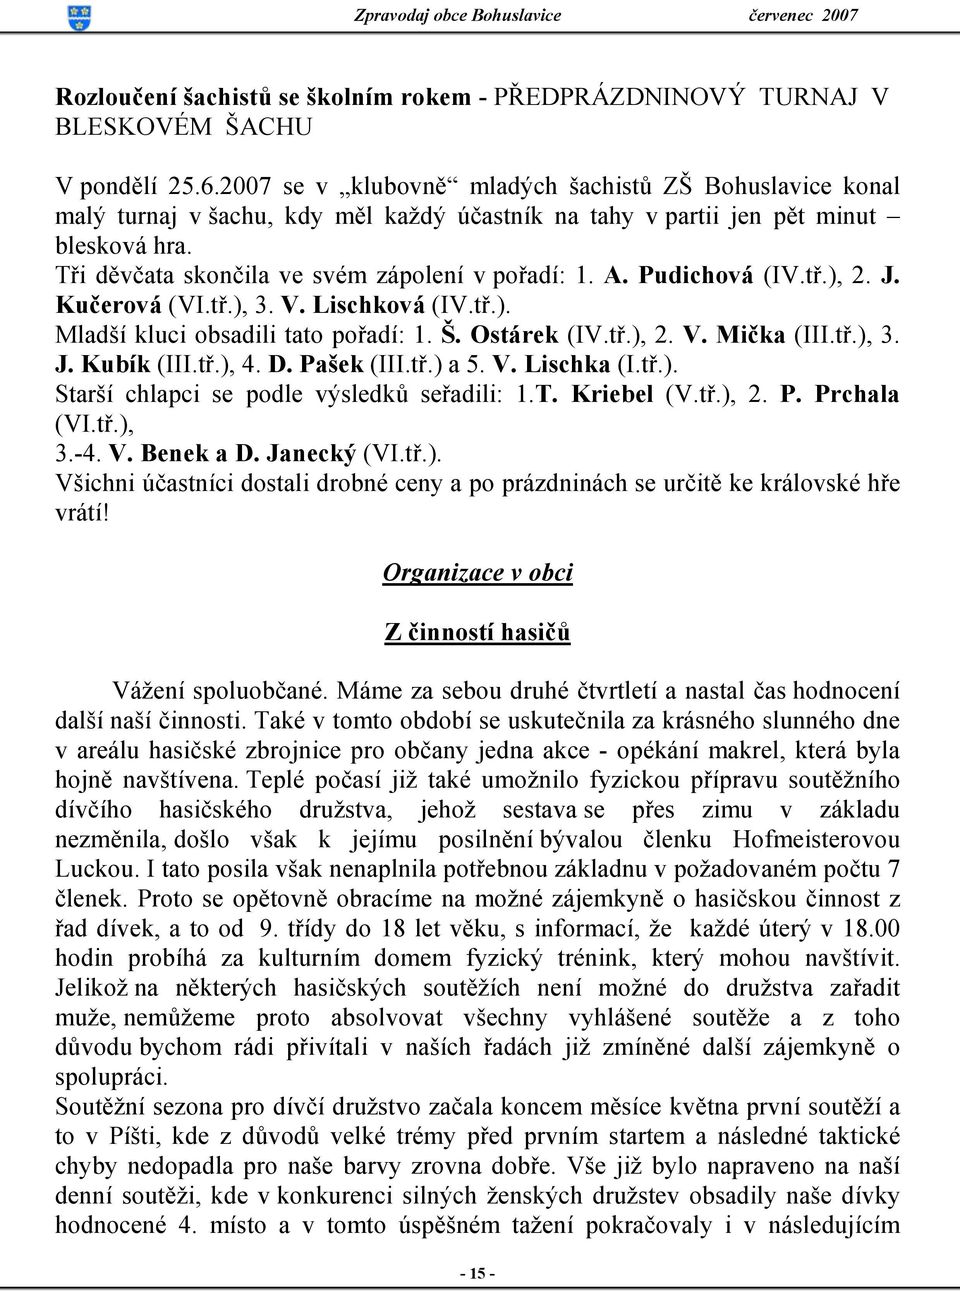 Pudichová (IV.tř.), 2. J. Kučerová (VI.tř.), 3. V. Lischková (IV.tř.). Mladší kluci obsadili tato pořadí: 1. Š. Ostárek (IV.tř.), 2. V. Mička (III.tř.), 3. J. Kubík (III.tř.), 4. D. Pašek (III.tř.) a 5.